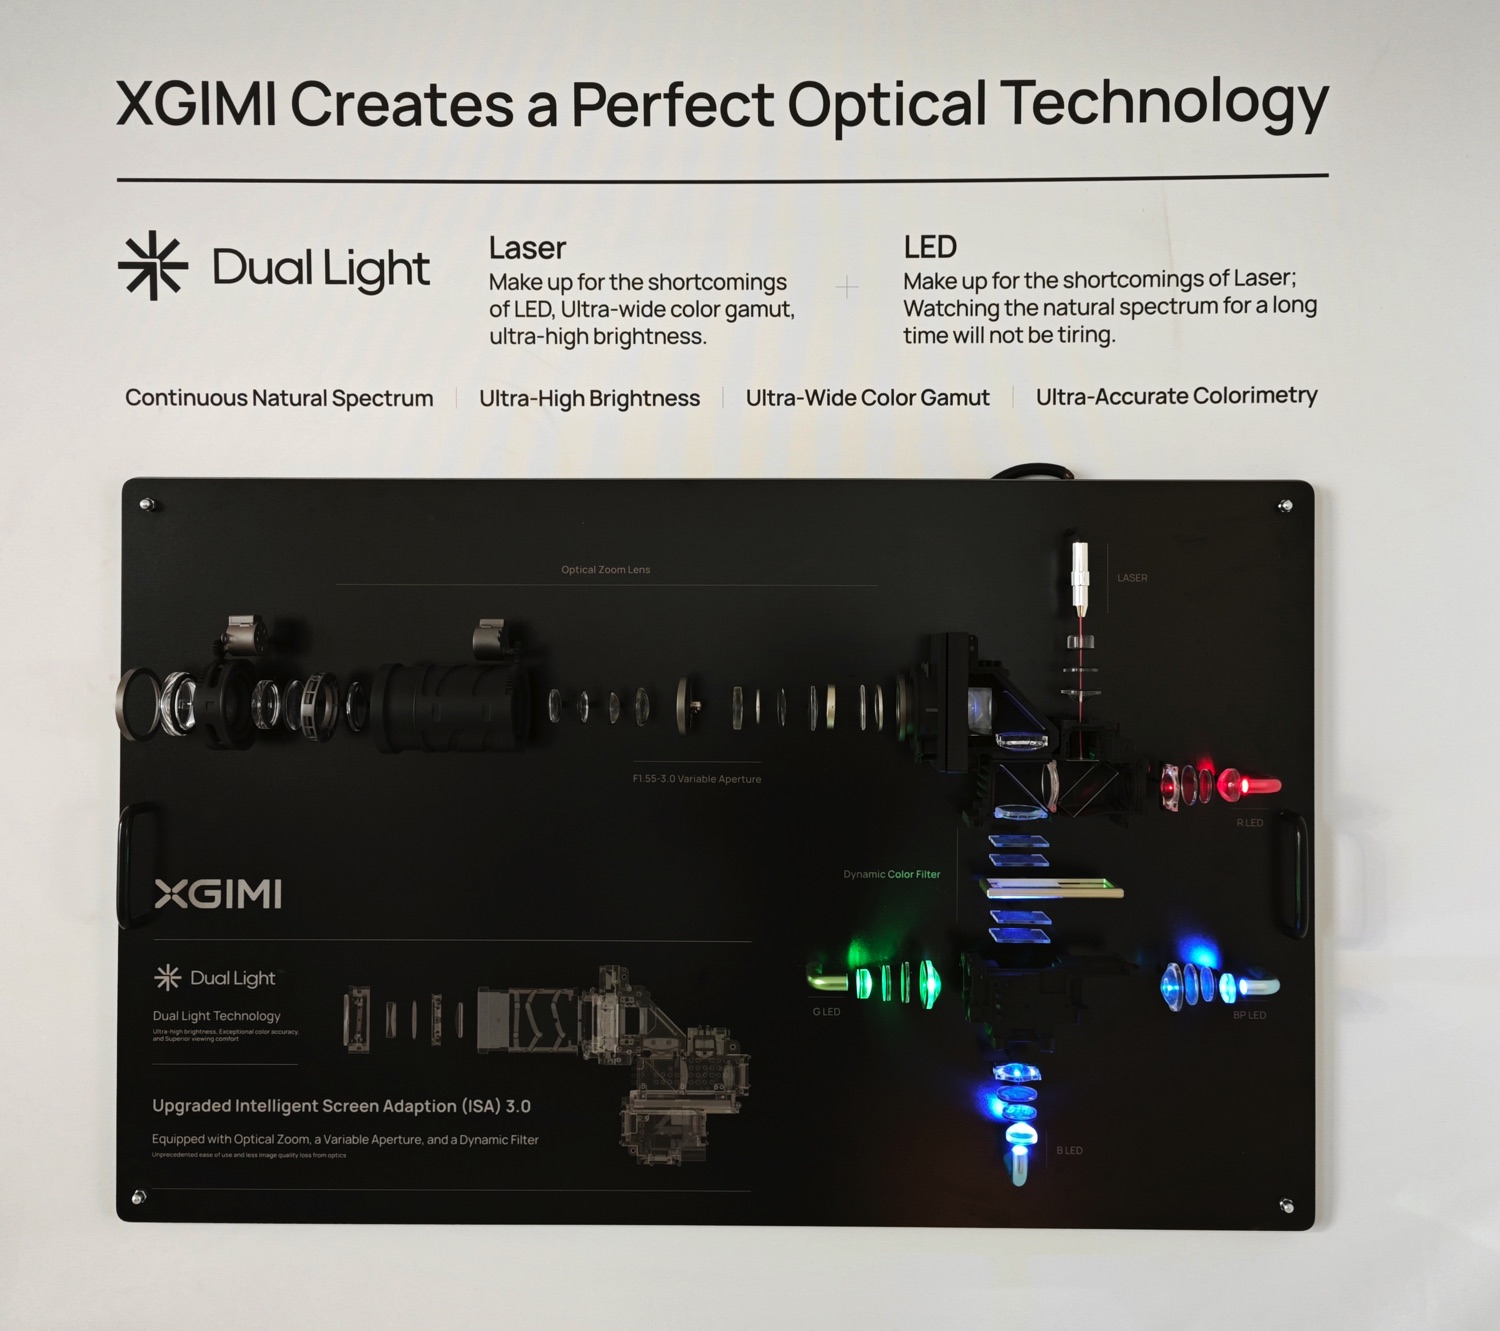 XGIMI Horizon Ultra, il proiettore Laser 4K con Dolby Vision nuovo design